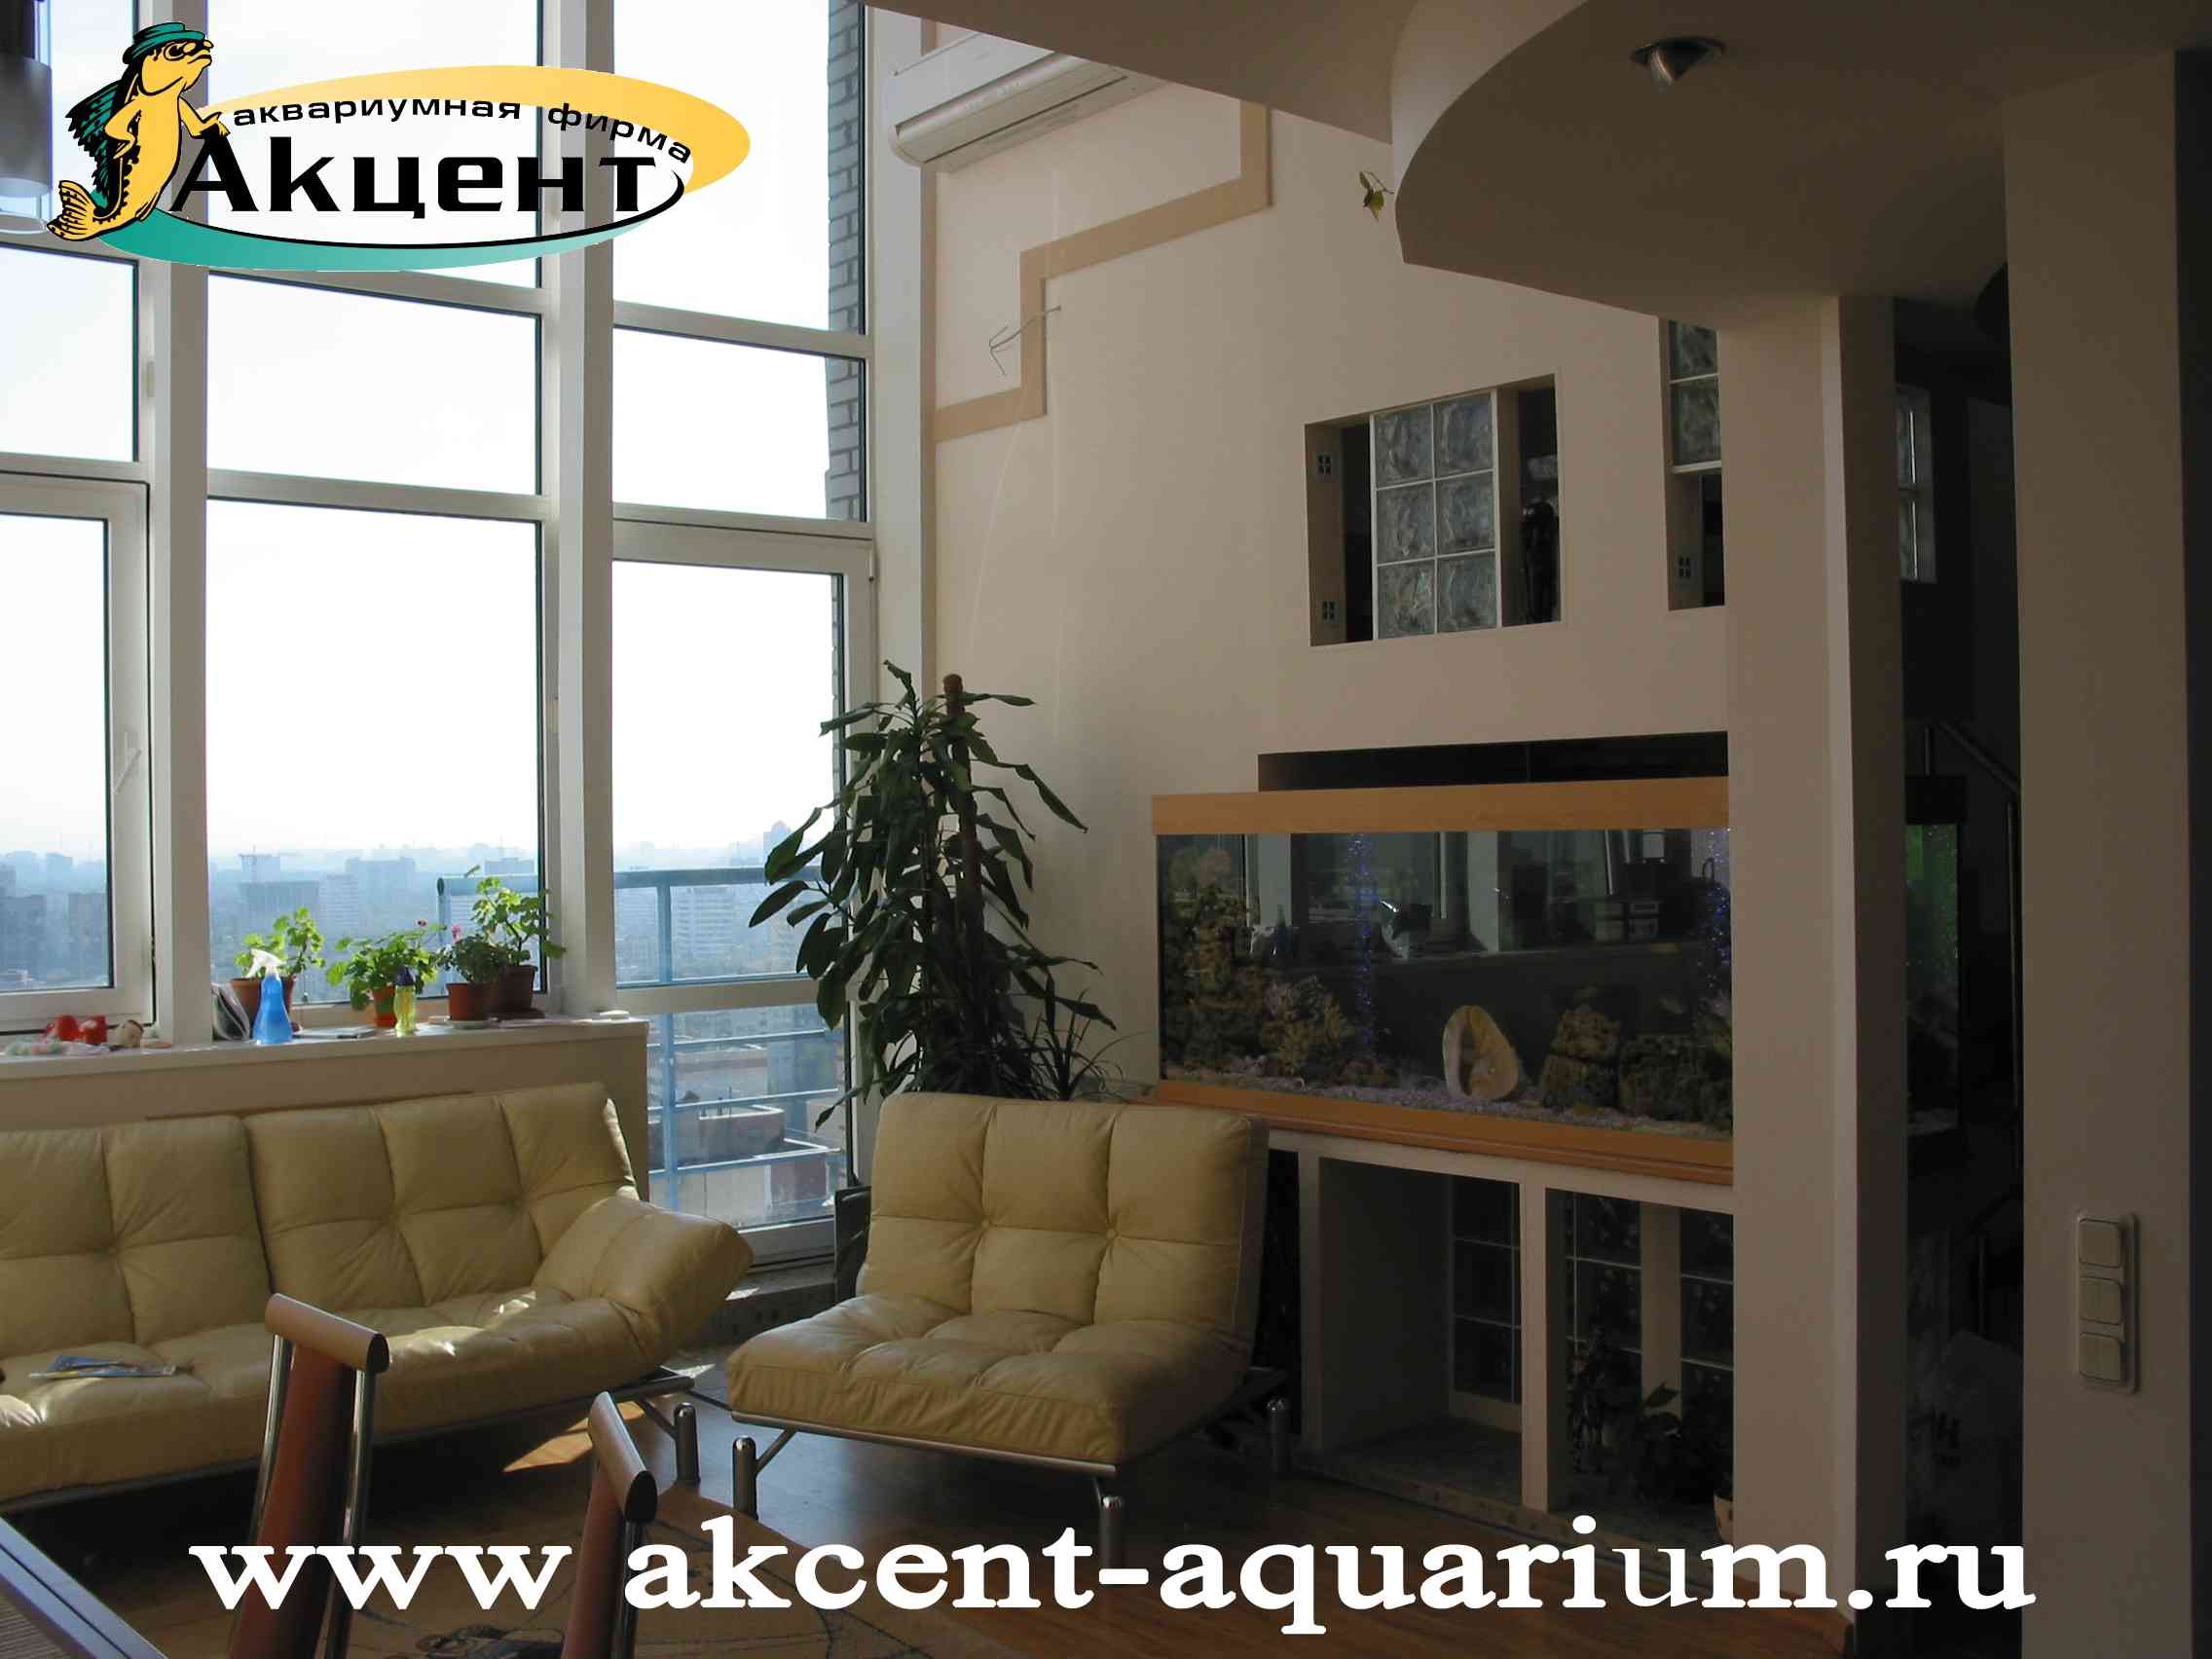 Акцент-аквариум, аквариум просмотровый 800 литров вид со стороны комнаты